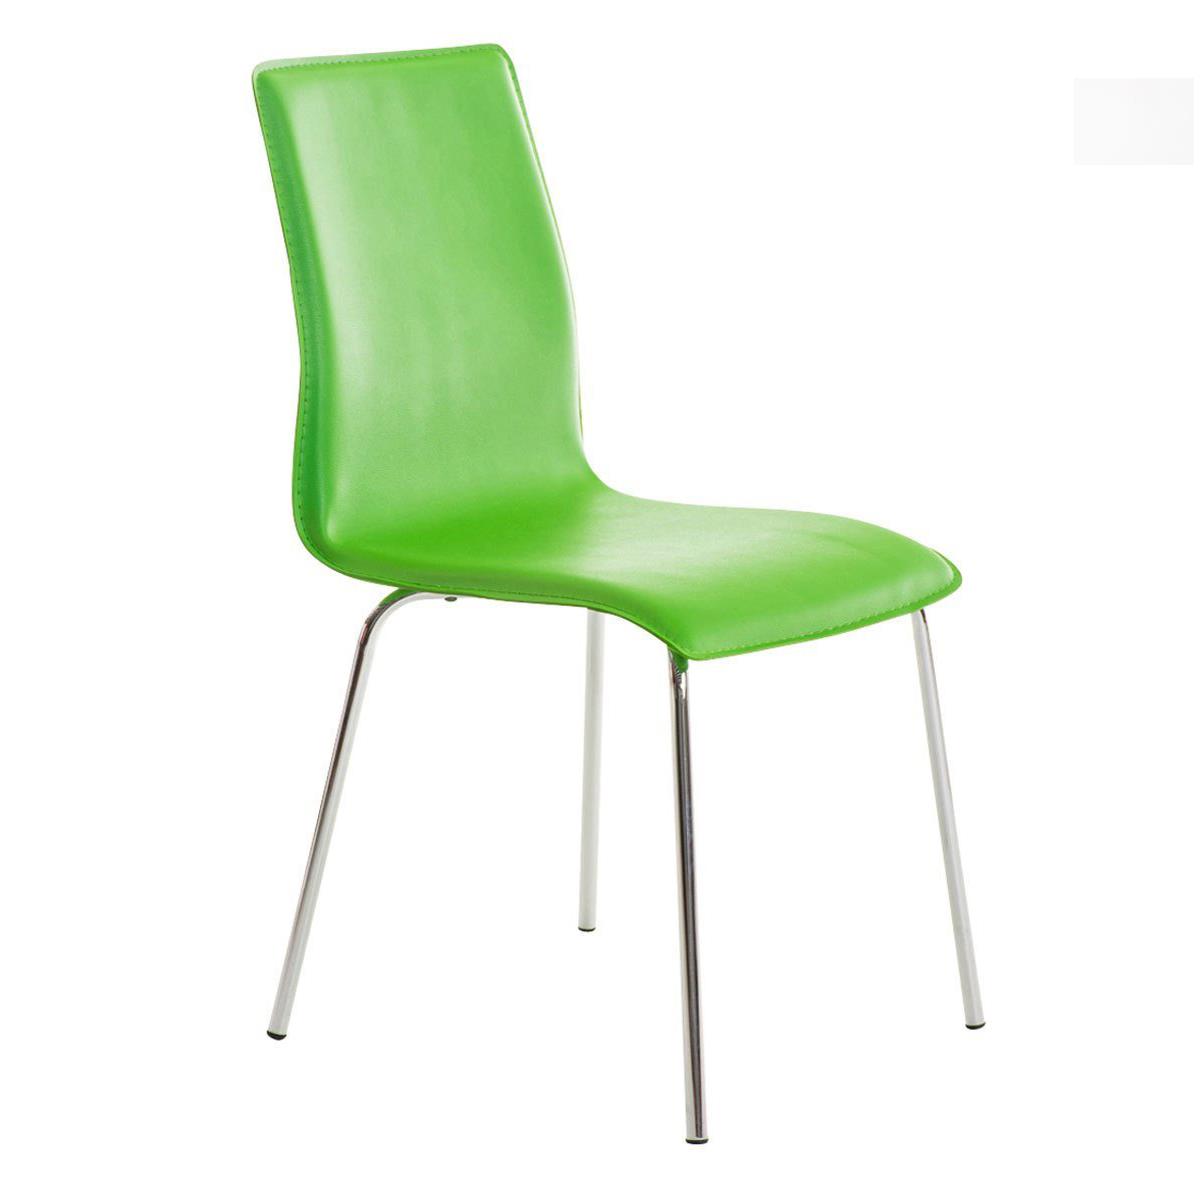 Cadeira de Visita MIKI, Design Exclusivo, Forrada Em Pele, Cor Verde